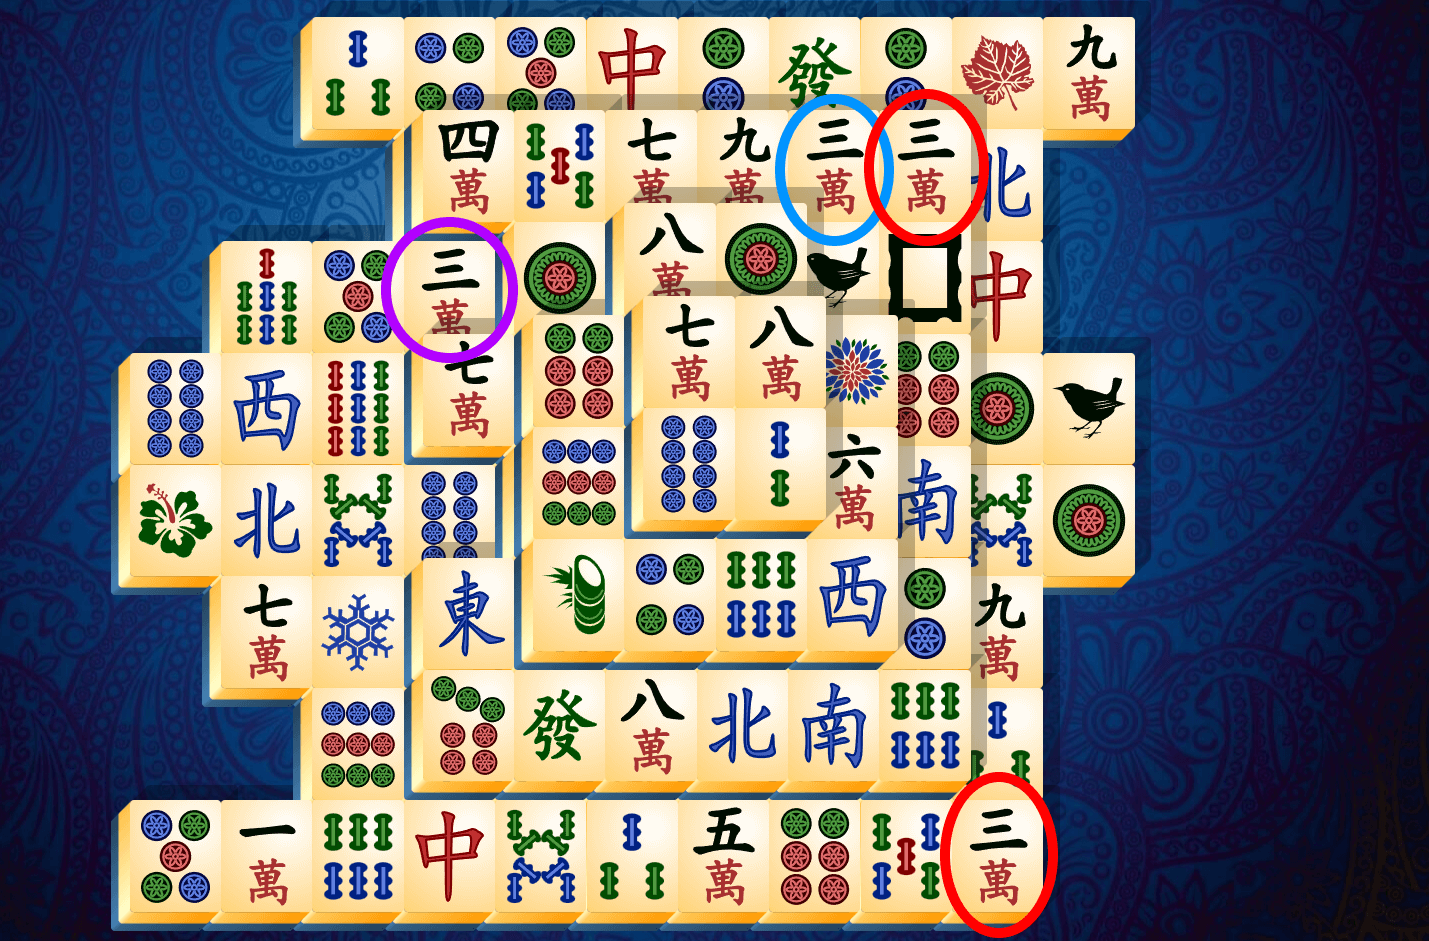 Anleitung zu Mahjong Solitär, Schritt 8